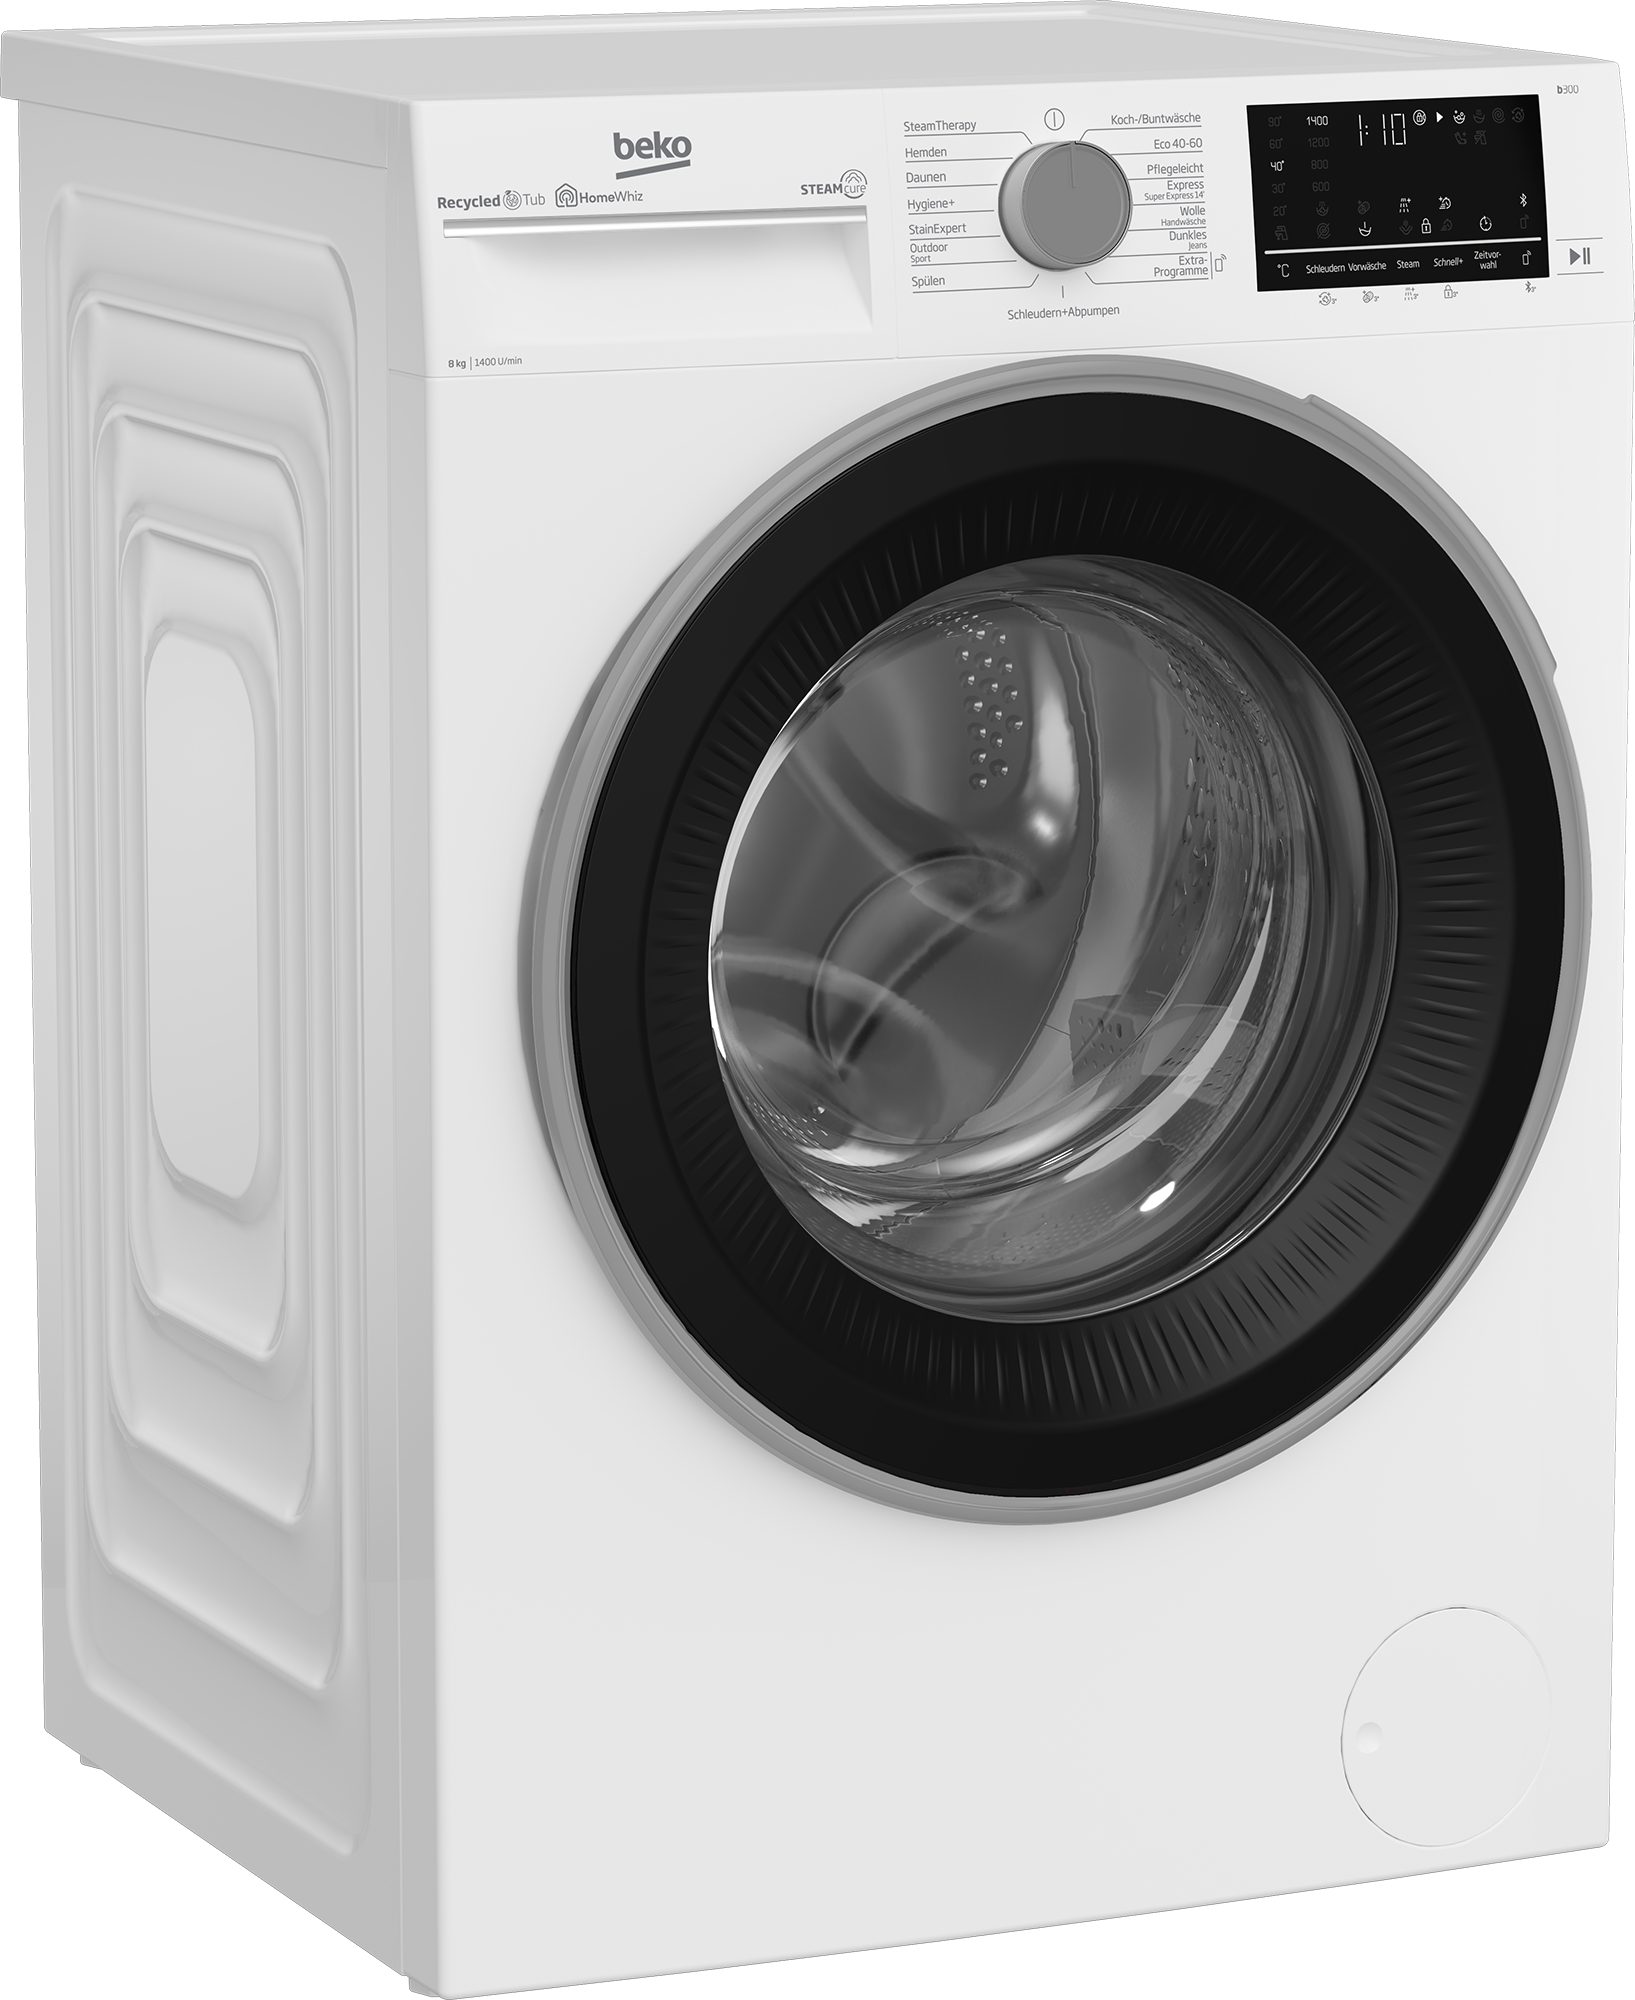 BEKO Waschmaschine b300 B3WFU58415W1, - U/min, allergenfrei 1400 99% SteamCure kg, 8